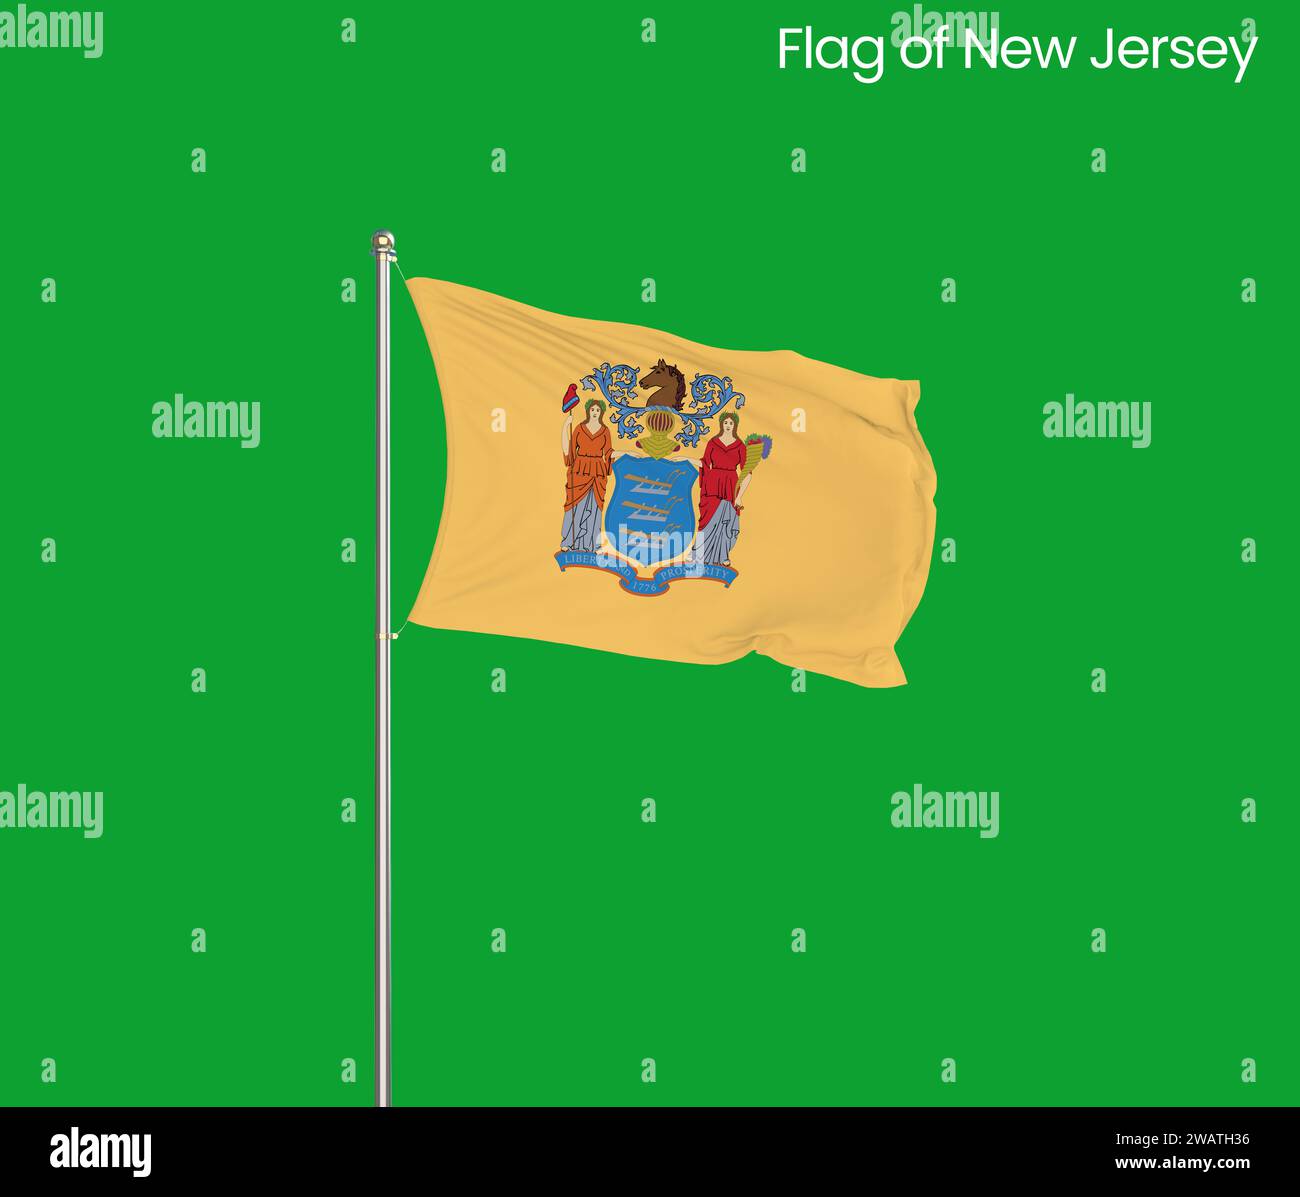 Bandiera del New Jersey ricca di dettagli. Bandiera dello stato del New Jersey, bandiera nazionale del New Jersey. Bandiera dello stato del New Jersey. USA. America. Foto Stock